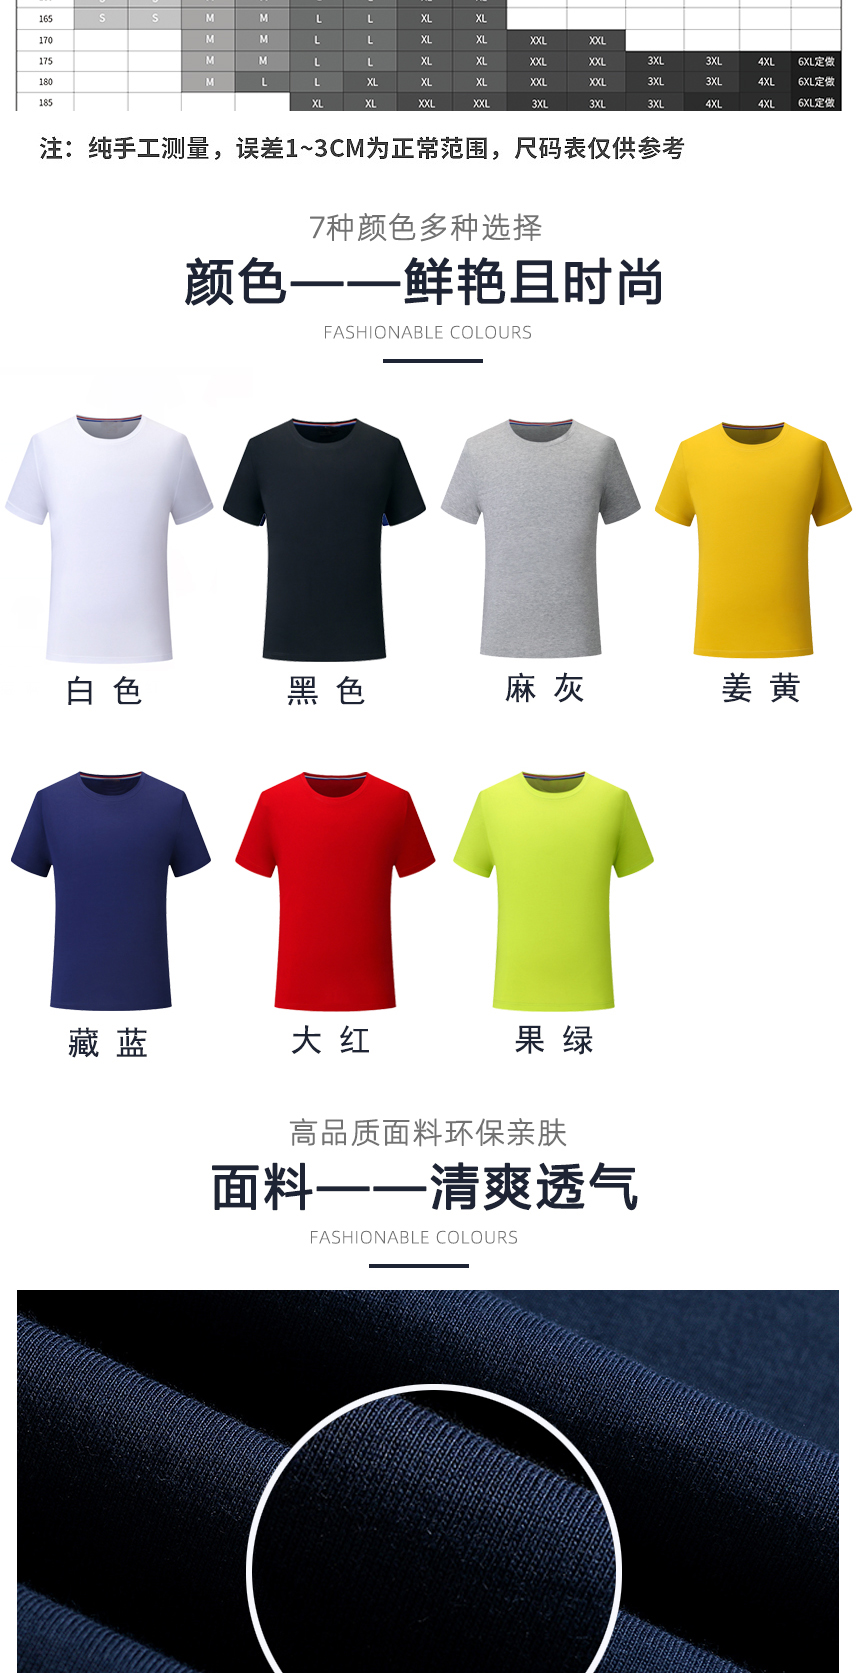 文化衫同款不同颜色款式展示，文化衫精选优质面料